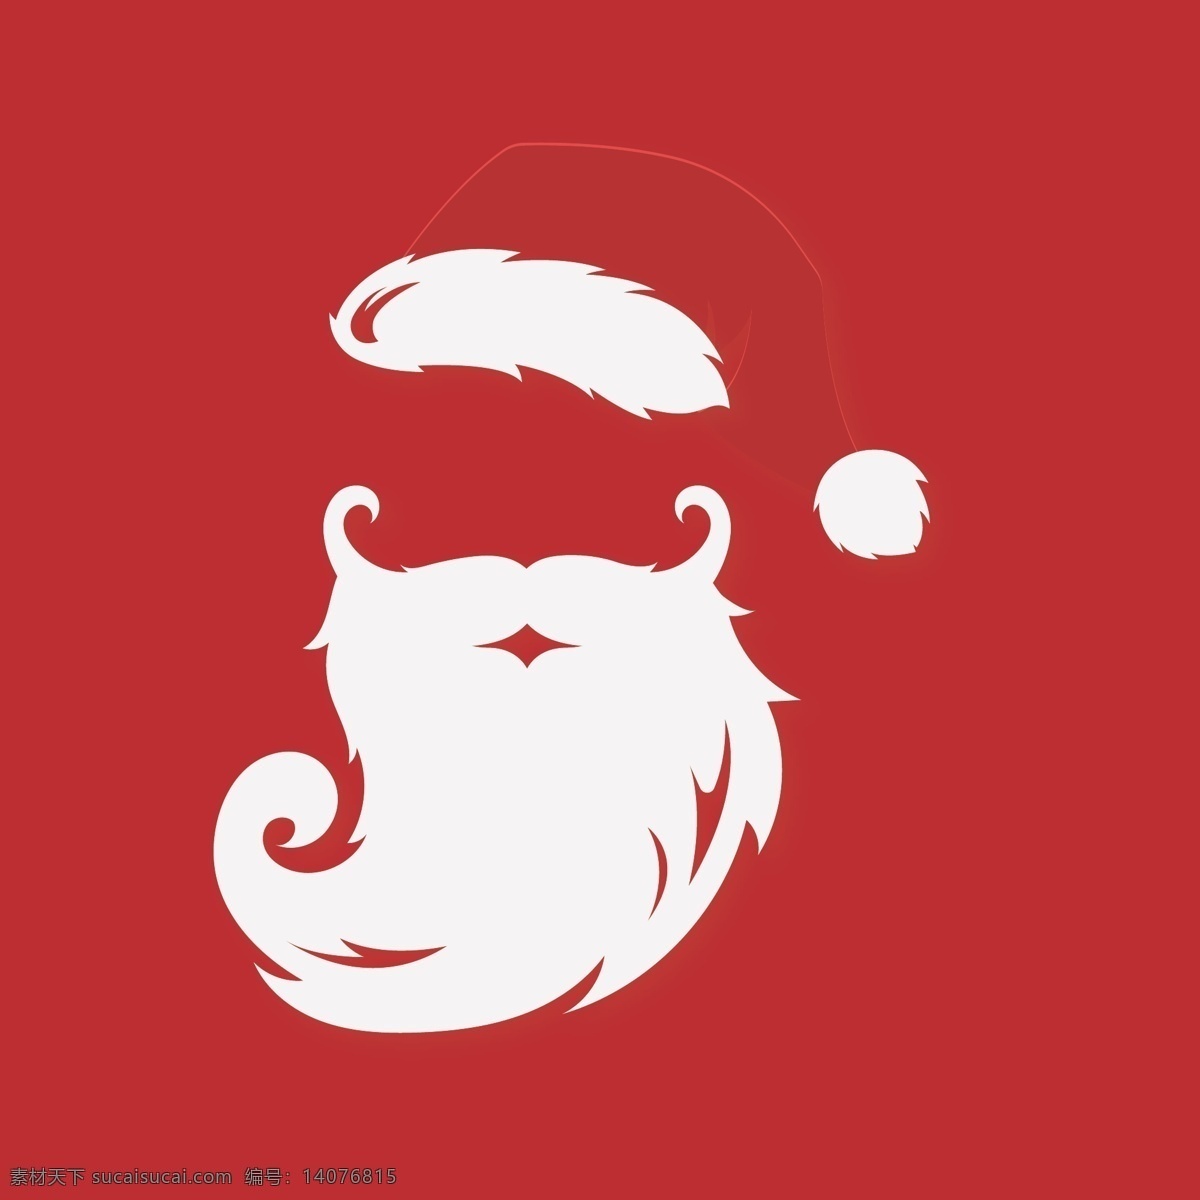 圣诞老人素材 胡须 帽子 红帽子 圣诞帽 圣诞老人 圣诞节 节日 白胡子 红色 白色 文化艺术 节日庆祝